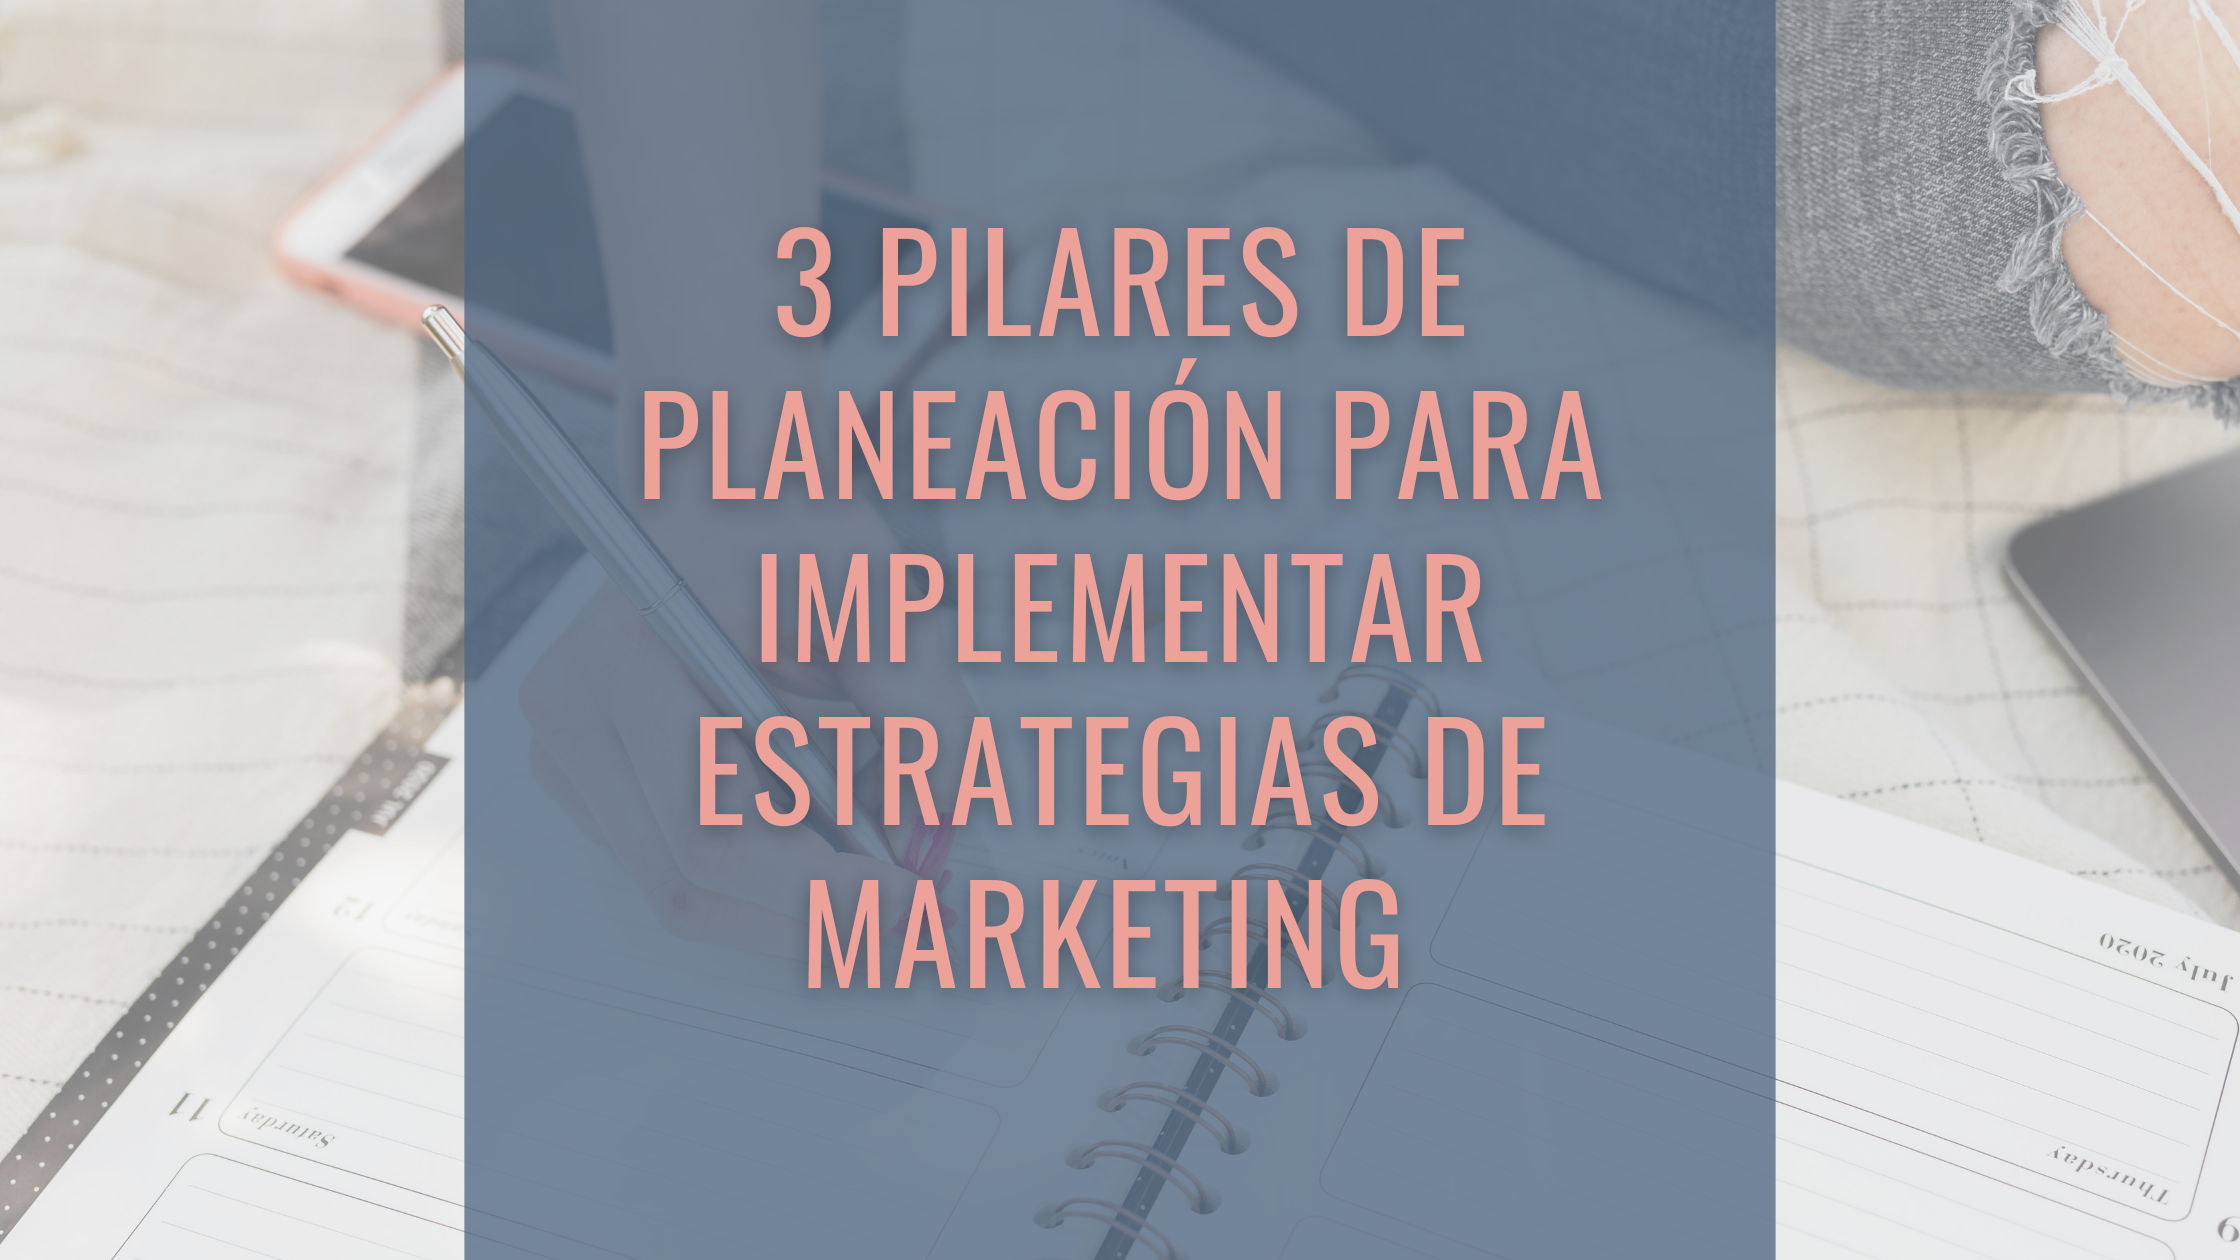 3 pilares de planeación para implementar estrategias de marketing